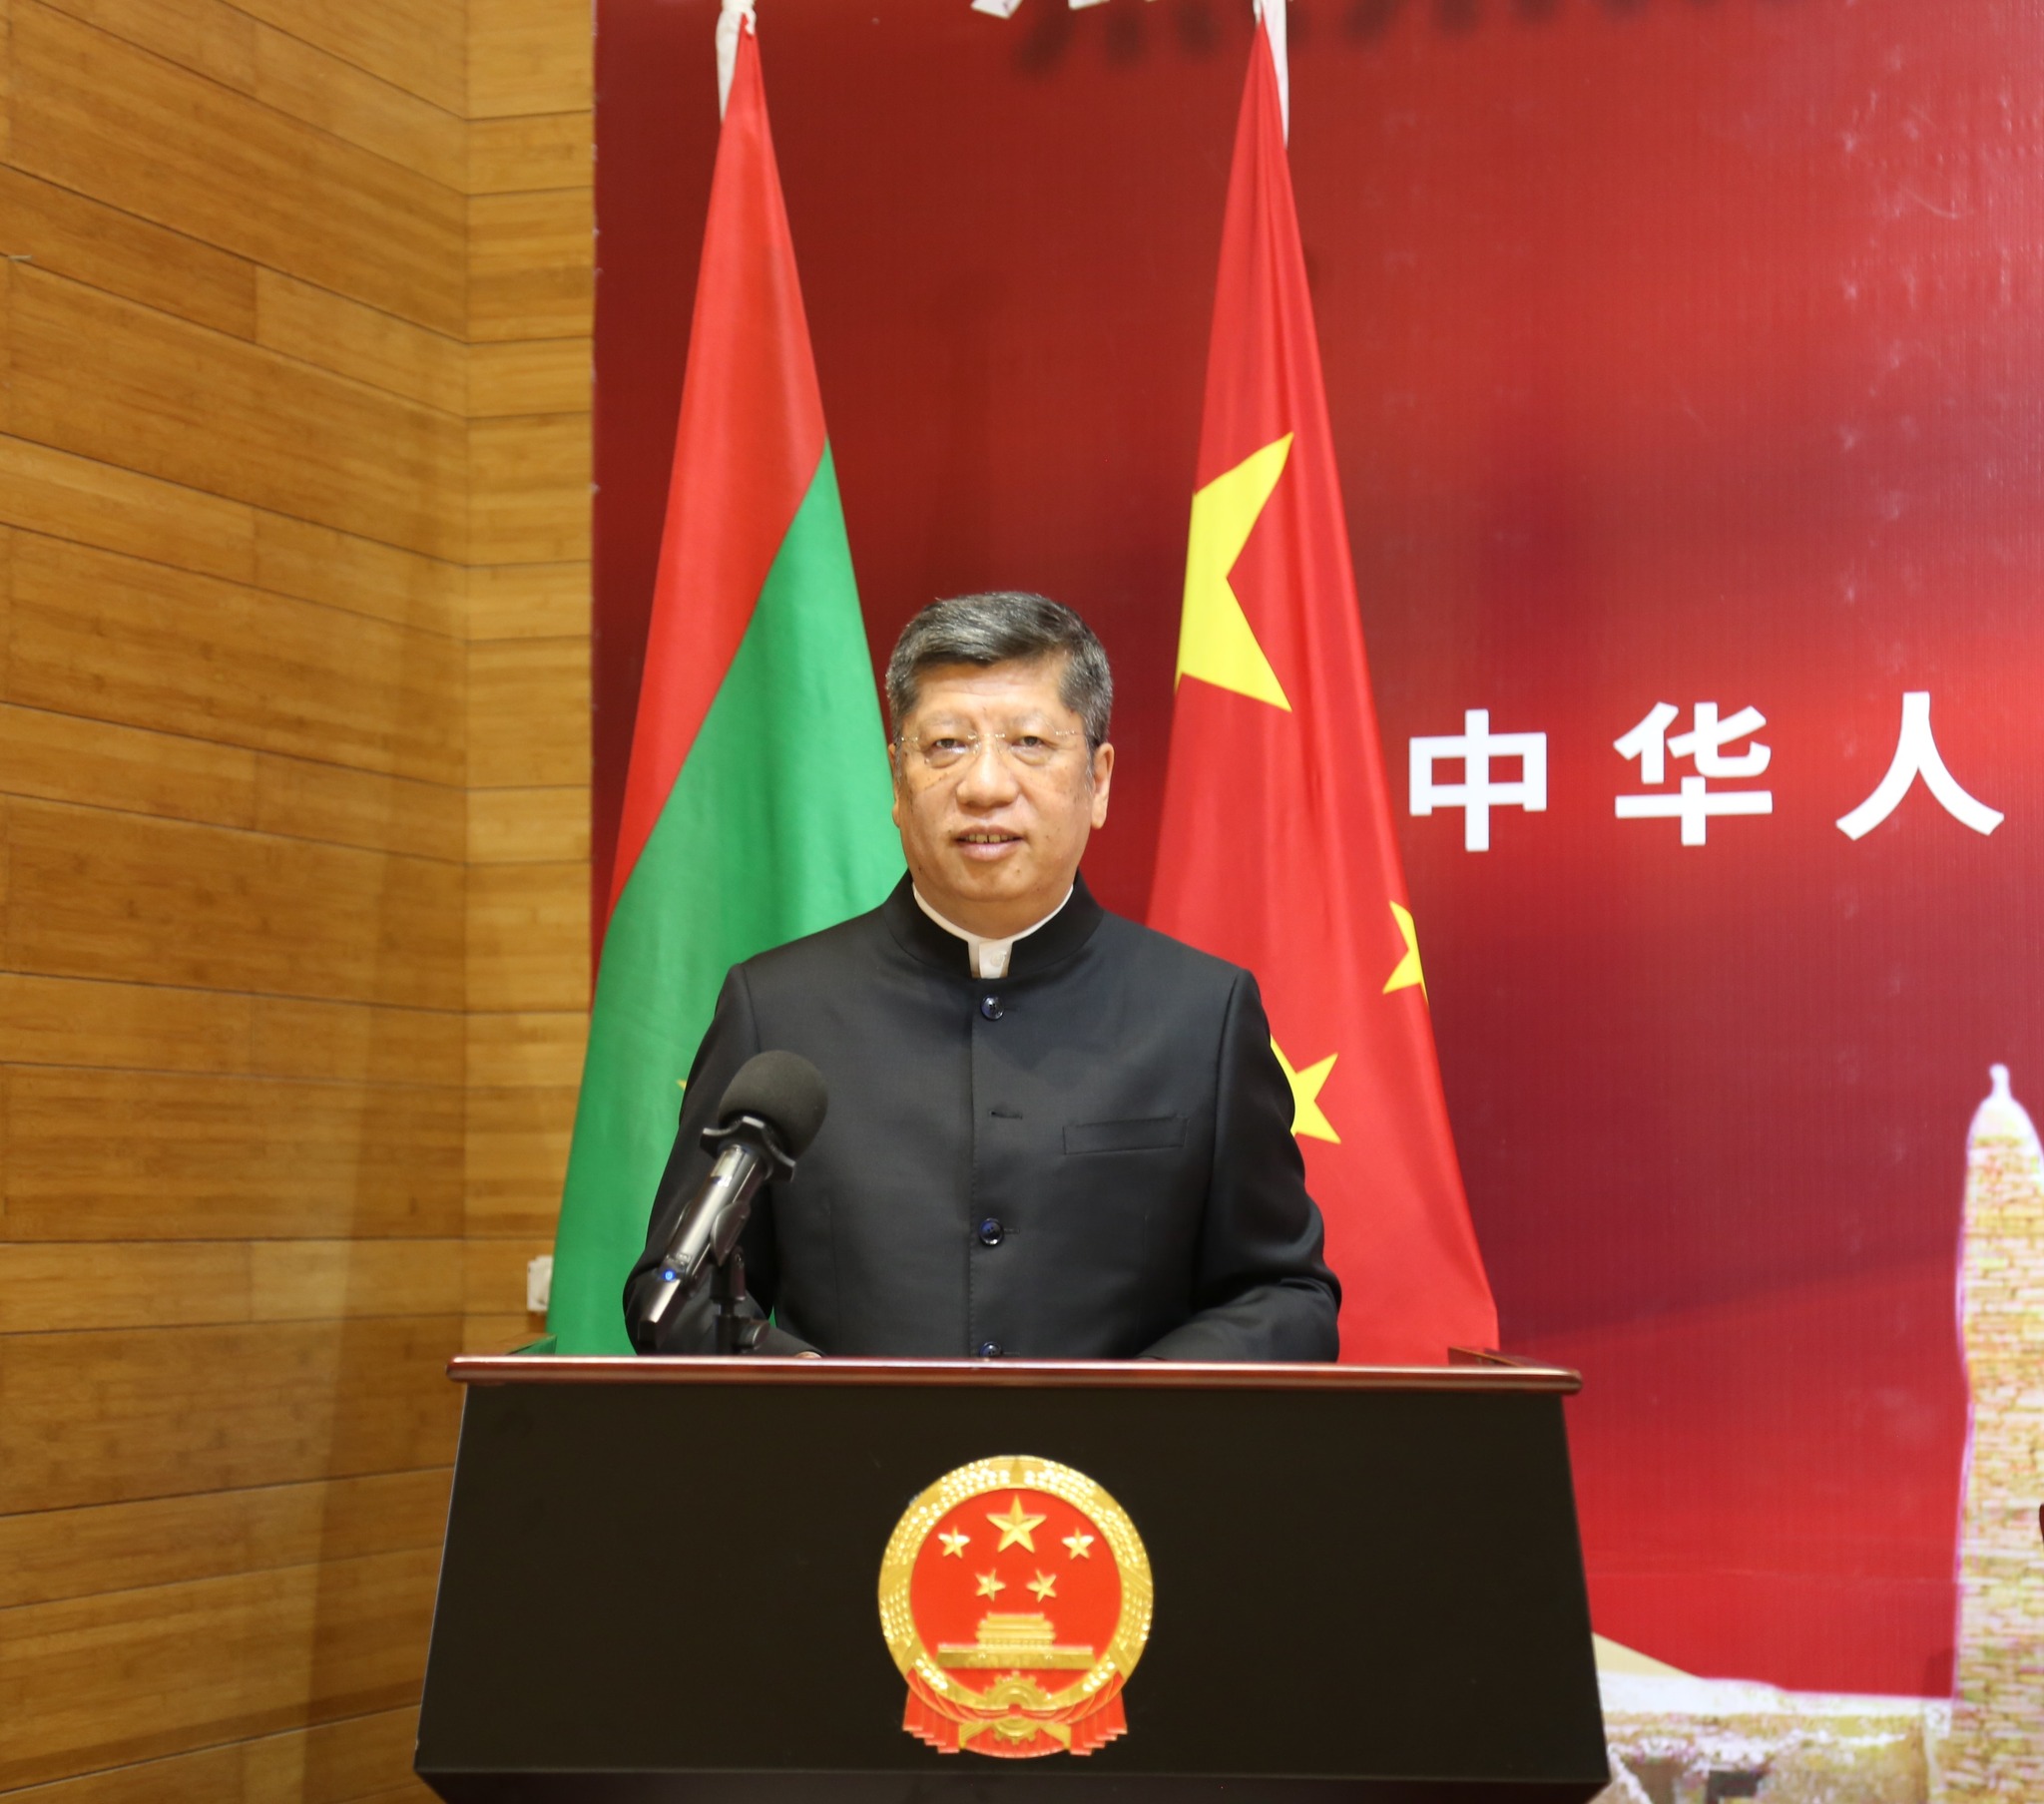 السفير الصيني في موريتانيا لي بيجي خلال خطابه في الاحتفالية